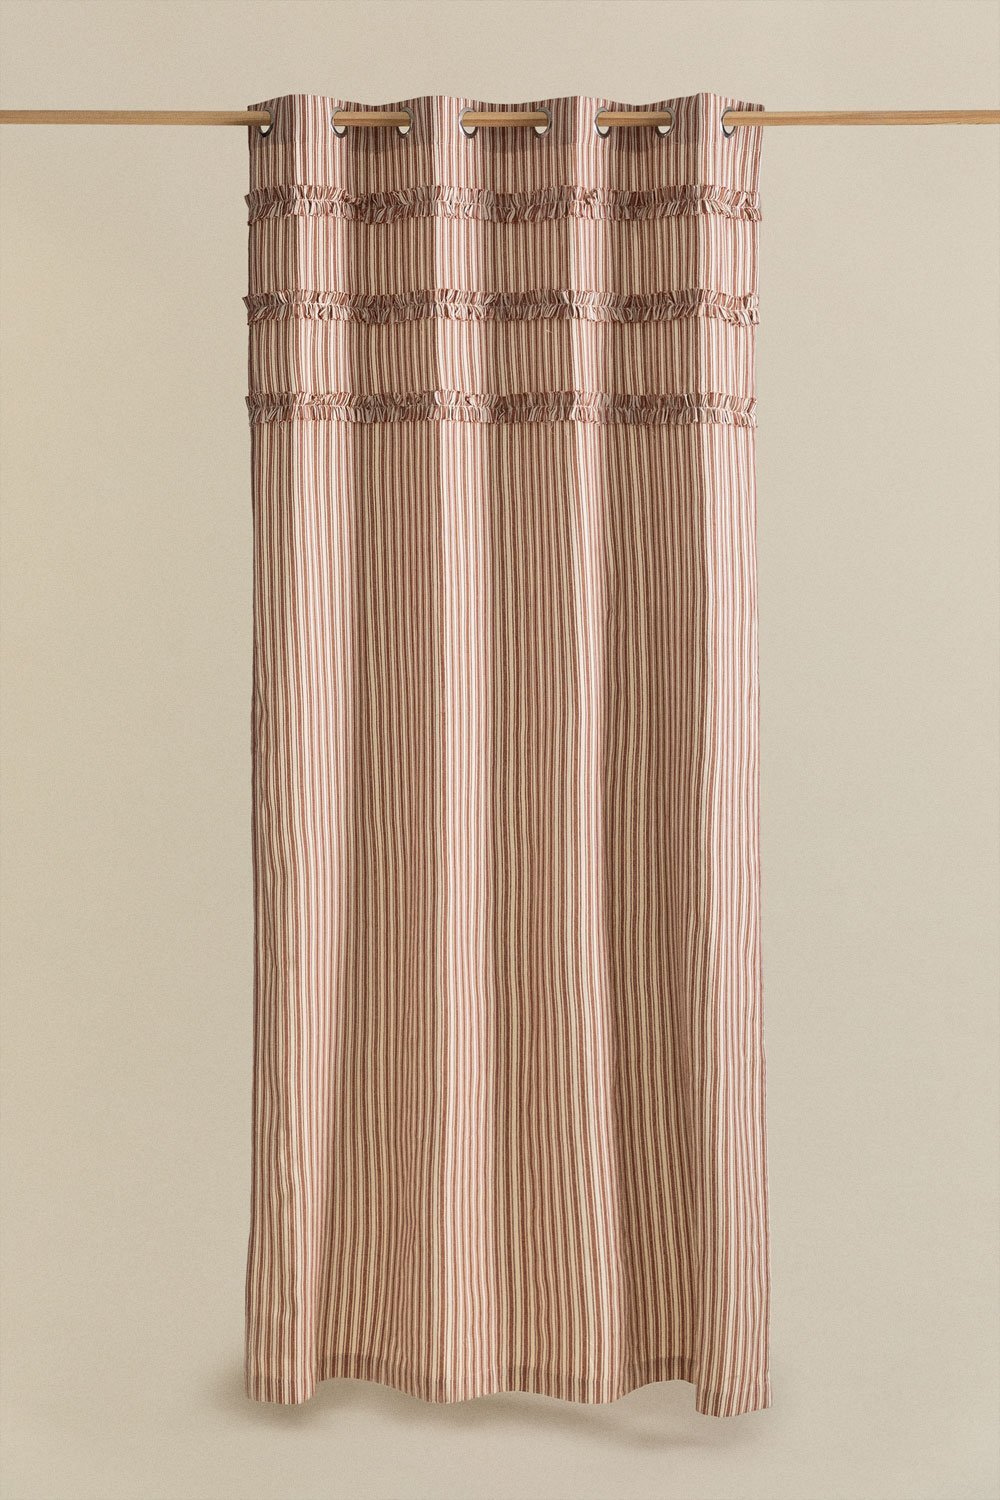 Tenda in cotone (140x260 cm) Mogrena, immagine della galleria 1